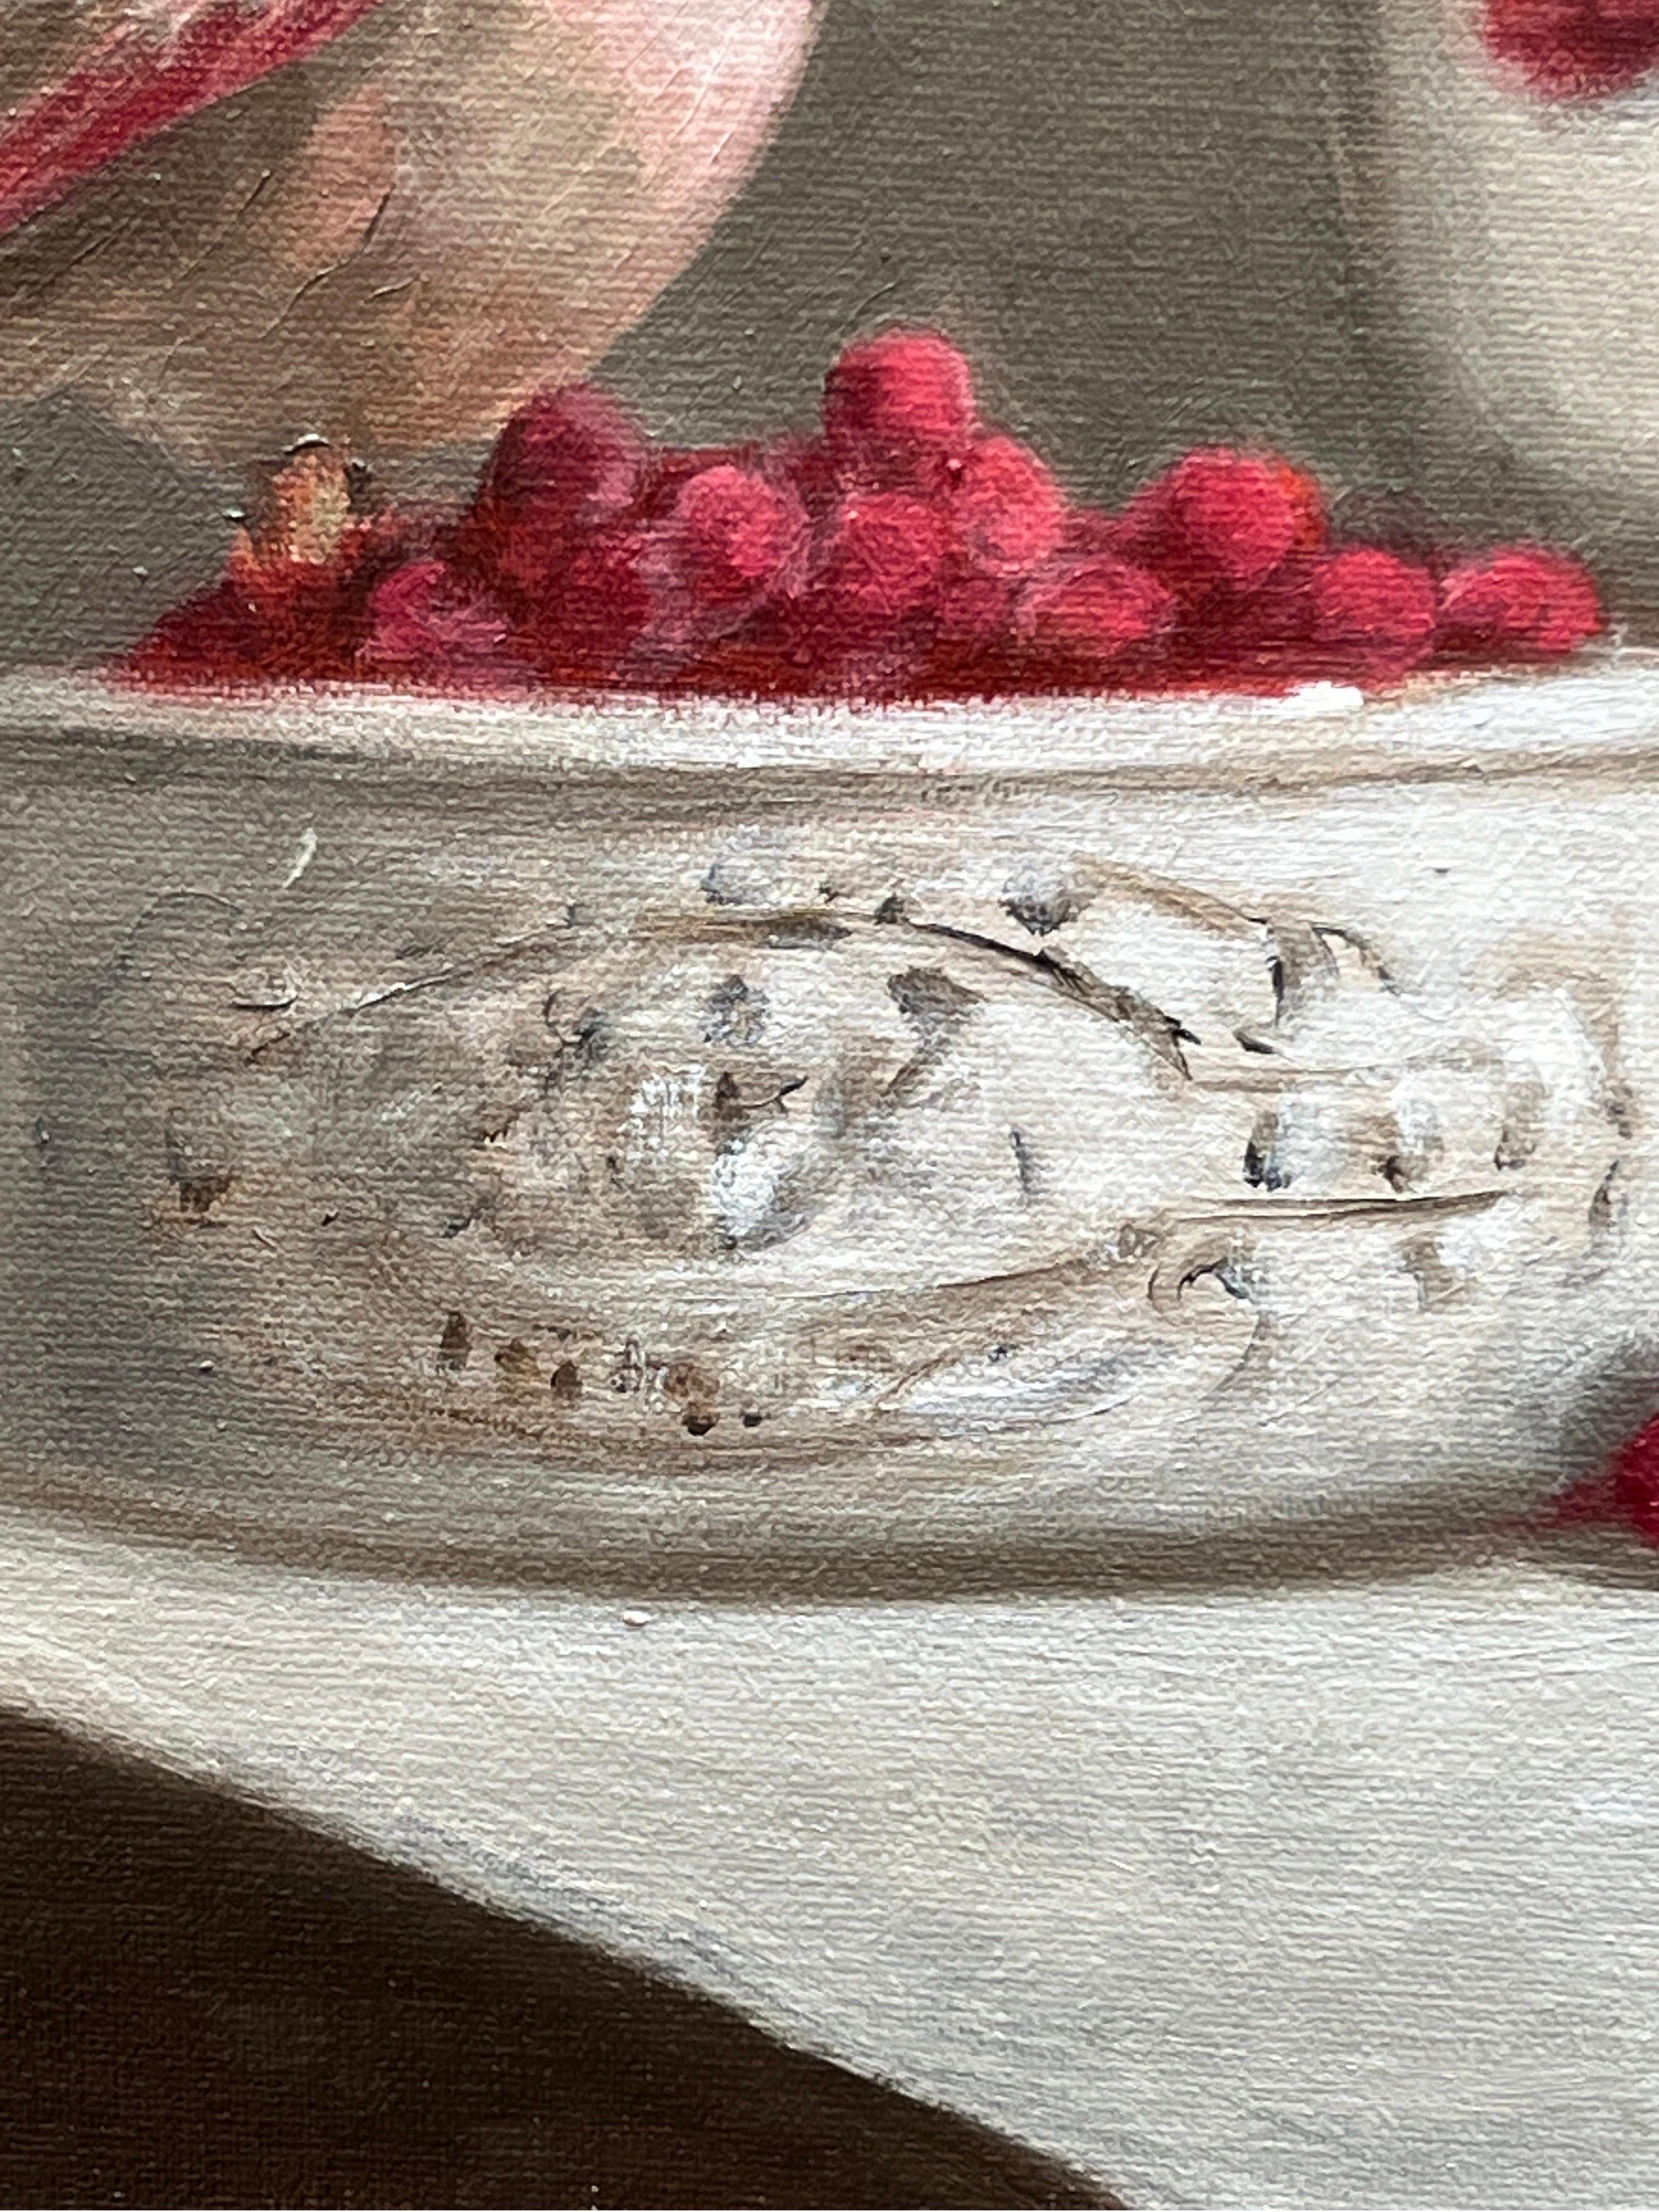 Cette œuvre est une peinture à l'huile originale sur panneau de lin. Un pinson domestique y est assis sur un plat en céramique contenant des baies rouges, à côté d'un bouquet de fleurs. 

GC Williams est diplômée en histoire de l'art, ce qui lui a